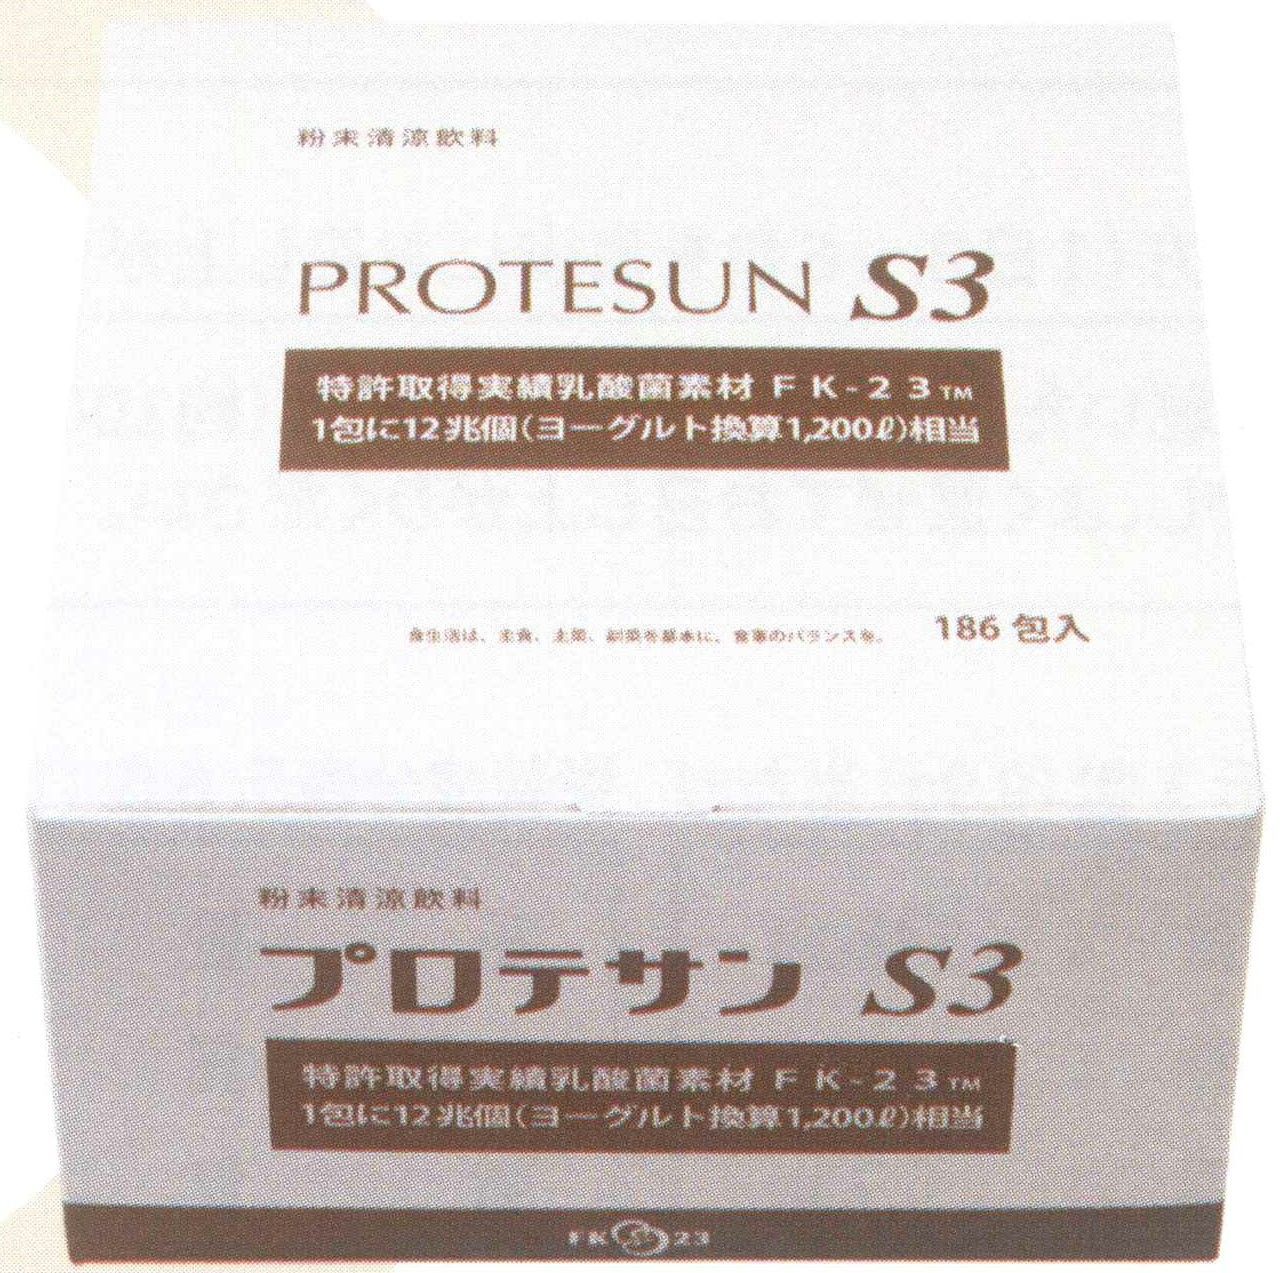 新プロテサンS3(31包入x2箱)・ニチニチ製薬・コッカス菌1包12兆個・送料無